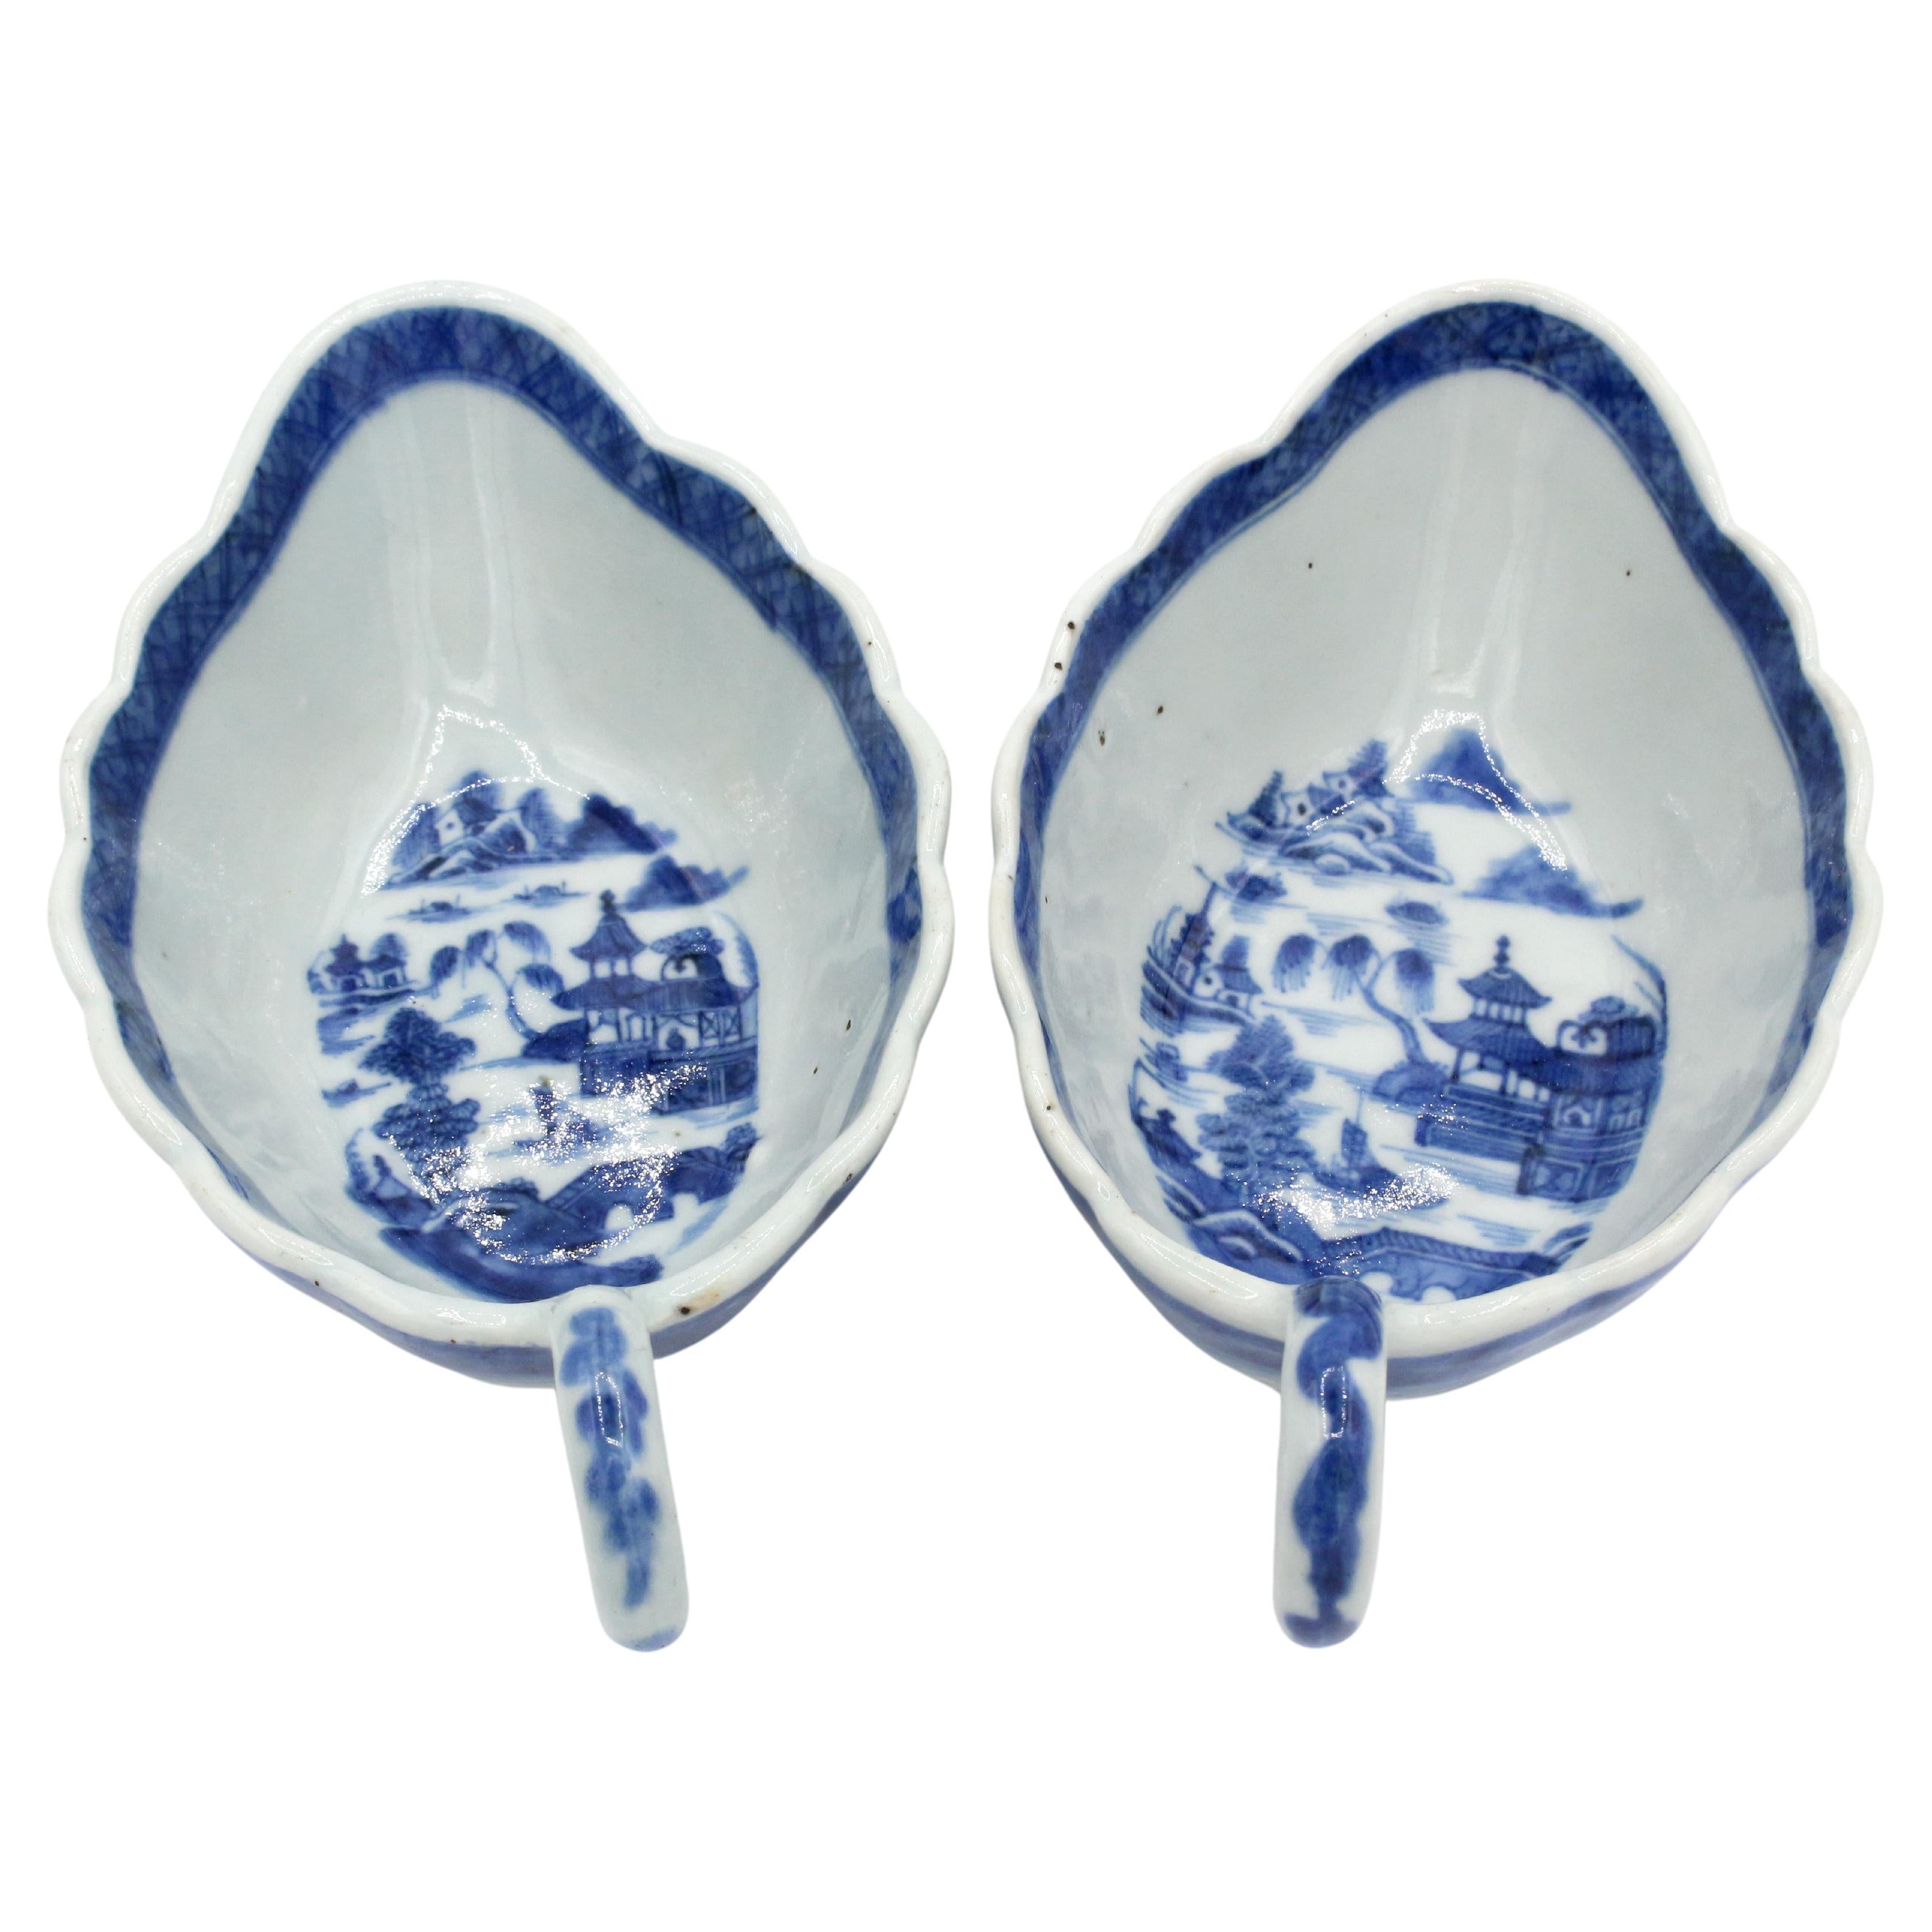 Paire de saucières chinoises bleues de type Canton datant des années 1830